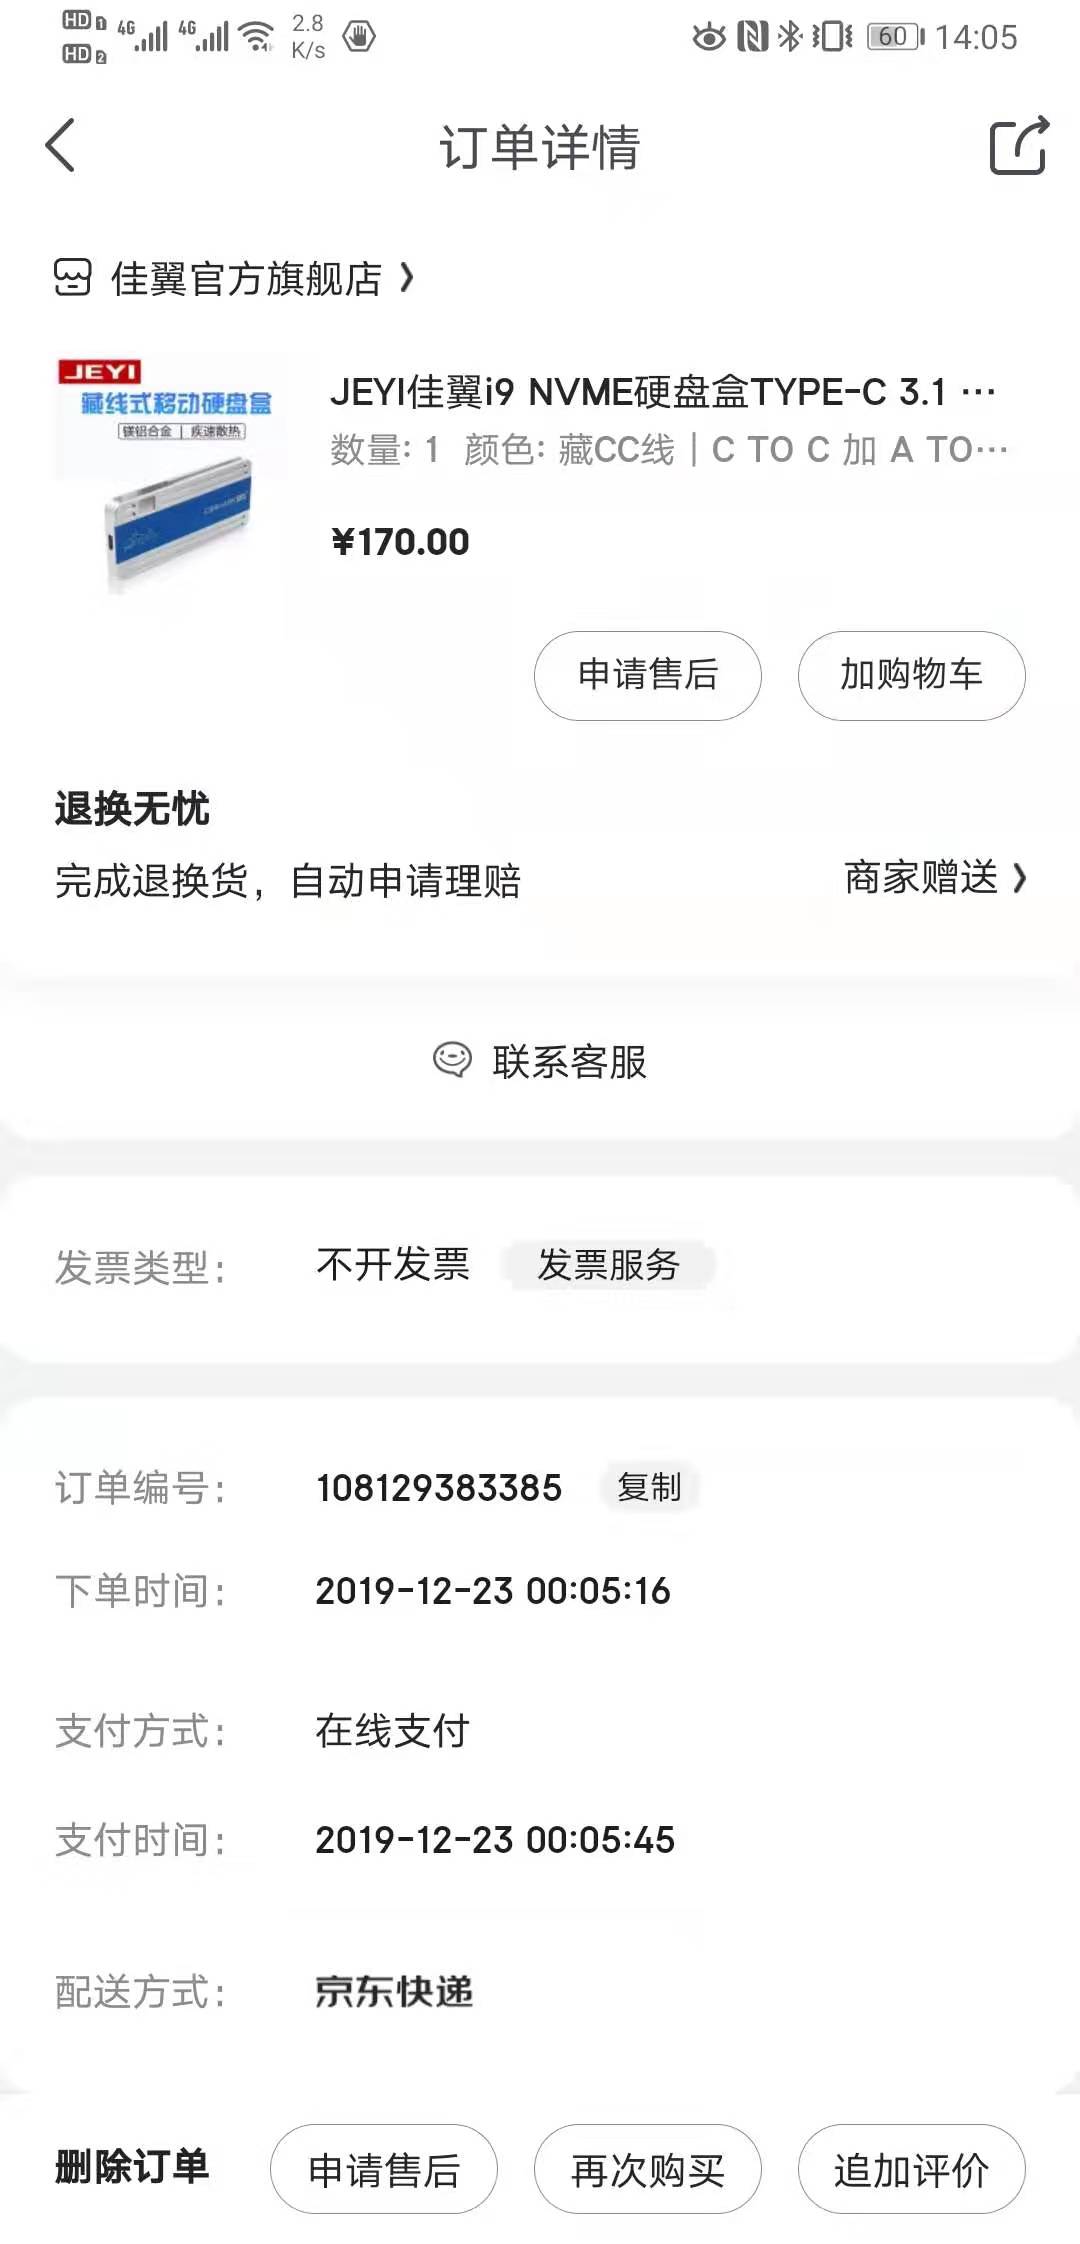 WeChat Image_20191227140613.jpg